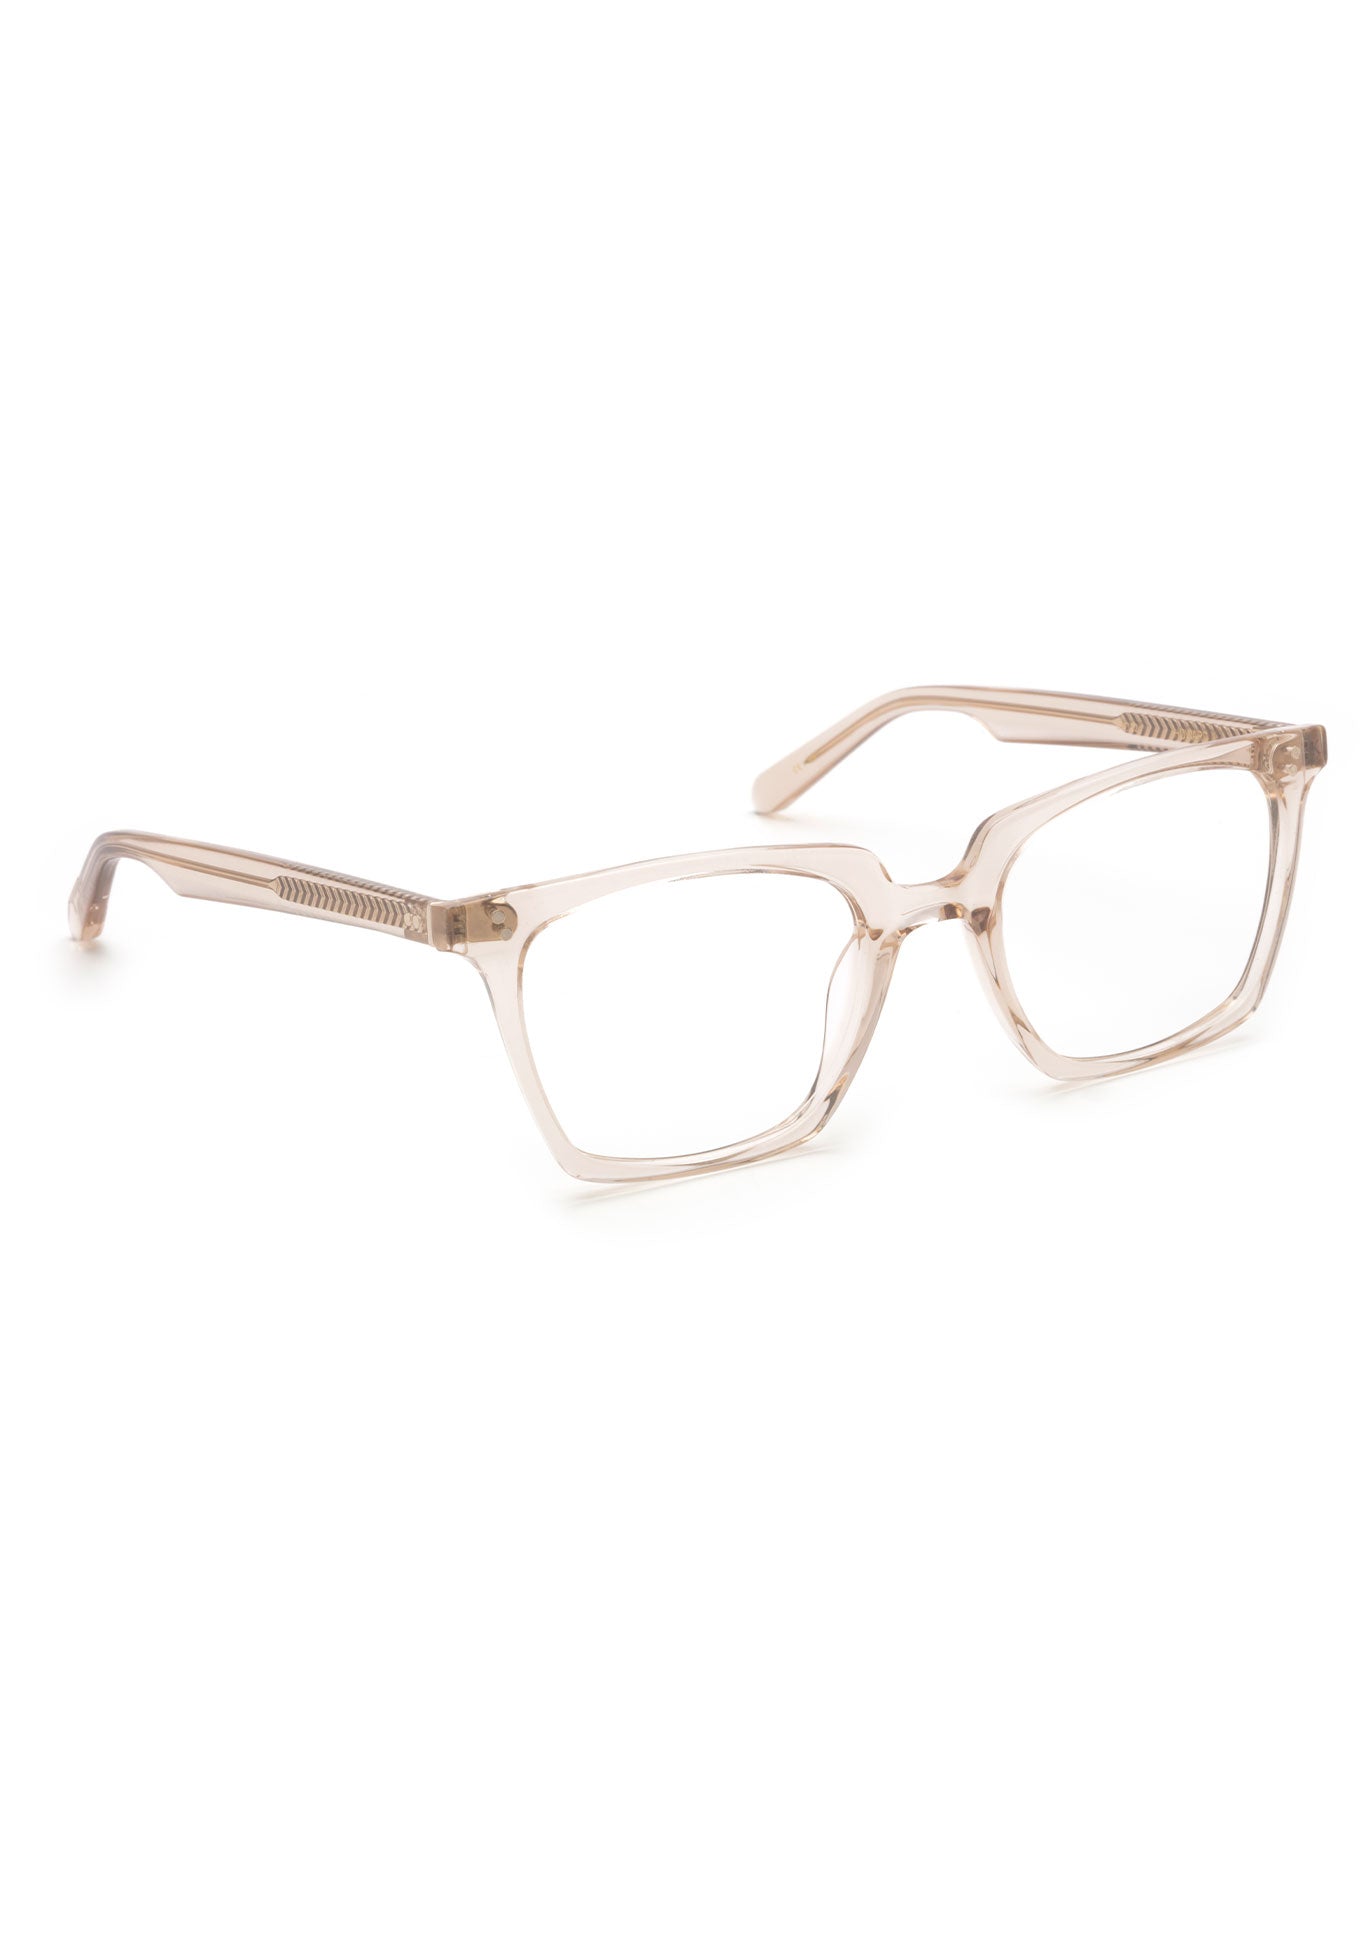 KREWE - HOWARD II | Buff Handcrafted, luxury pink acetate eyeglasses